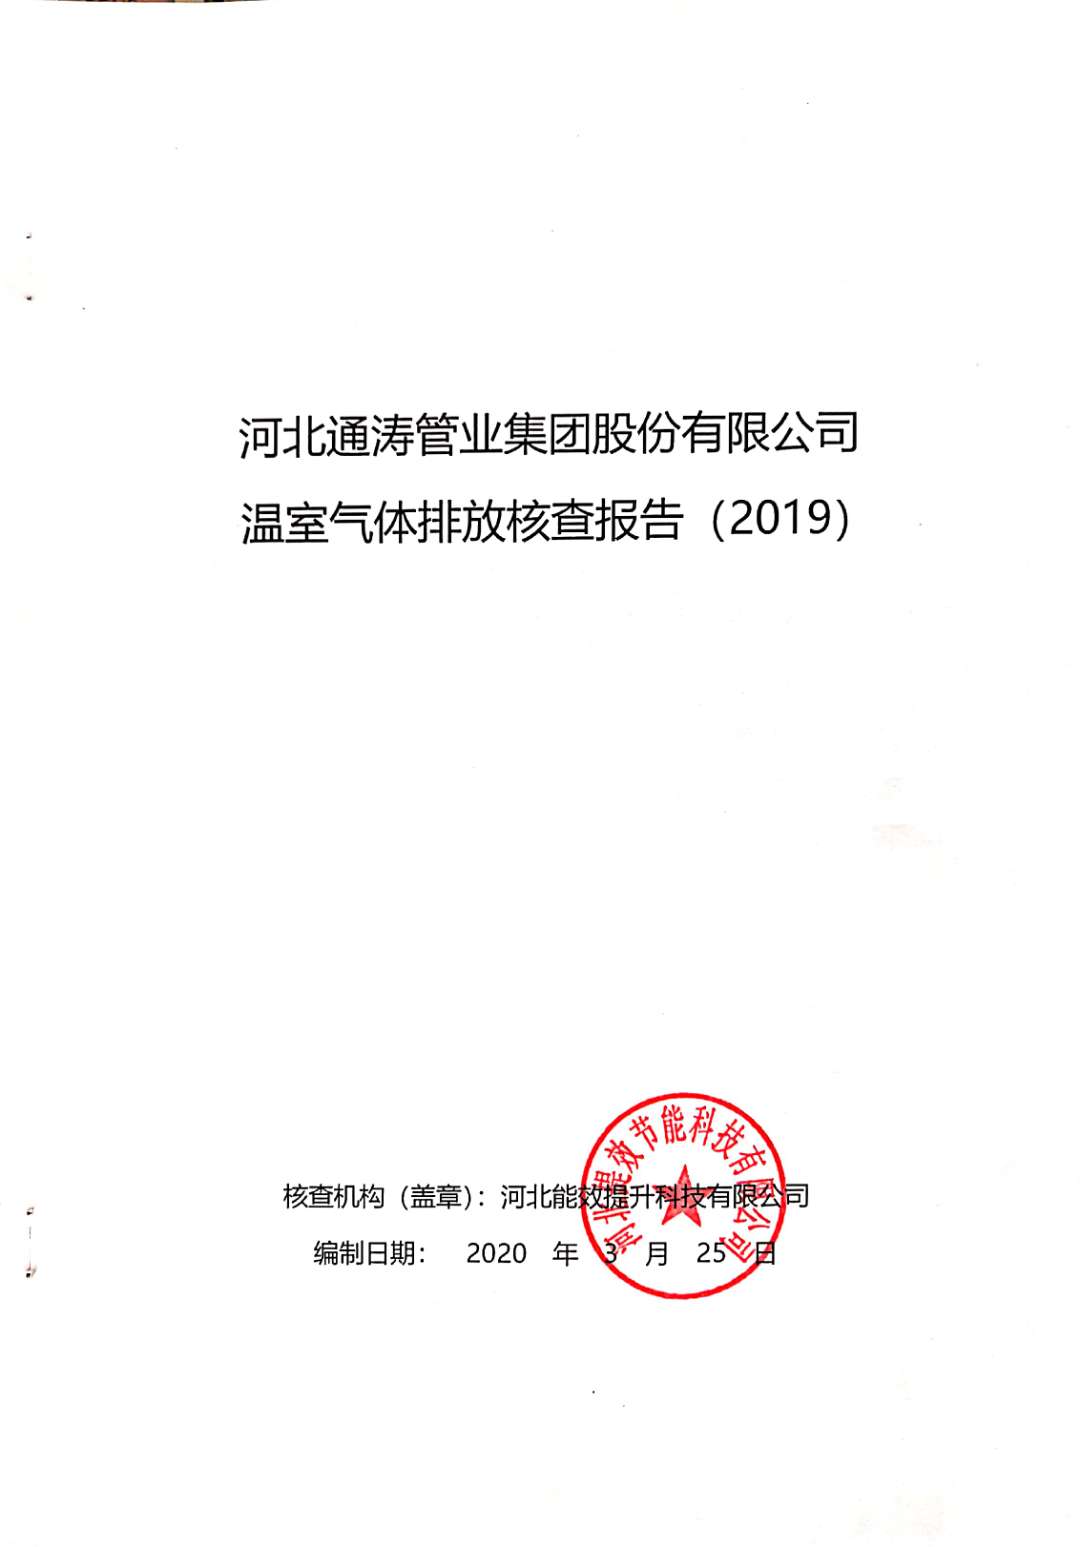 河北通涛管业集团股份有限公司温室气体排放核查报告（2019）